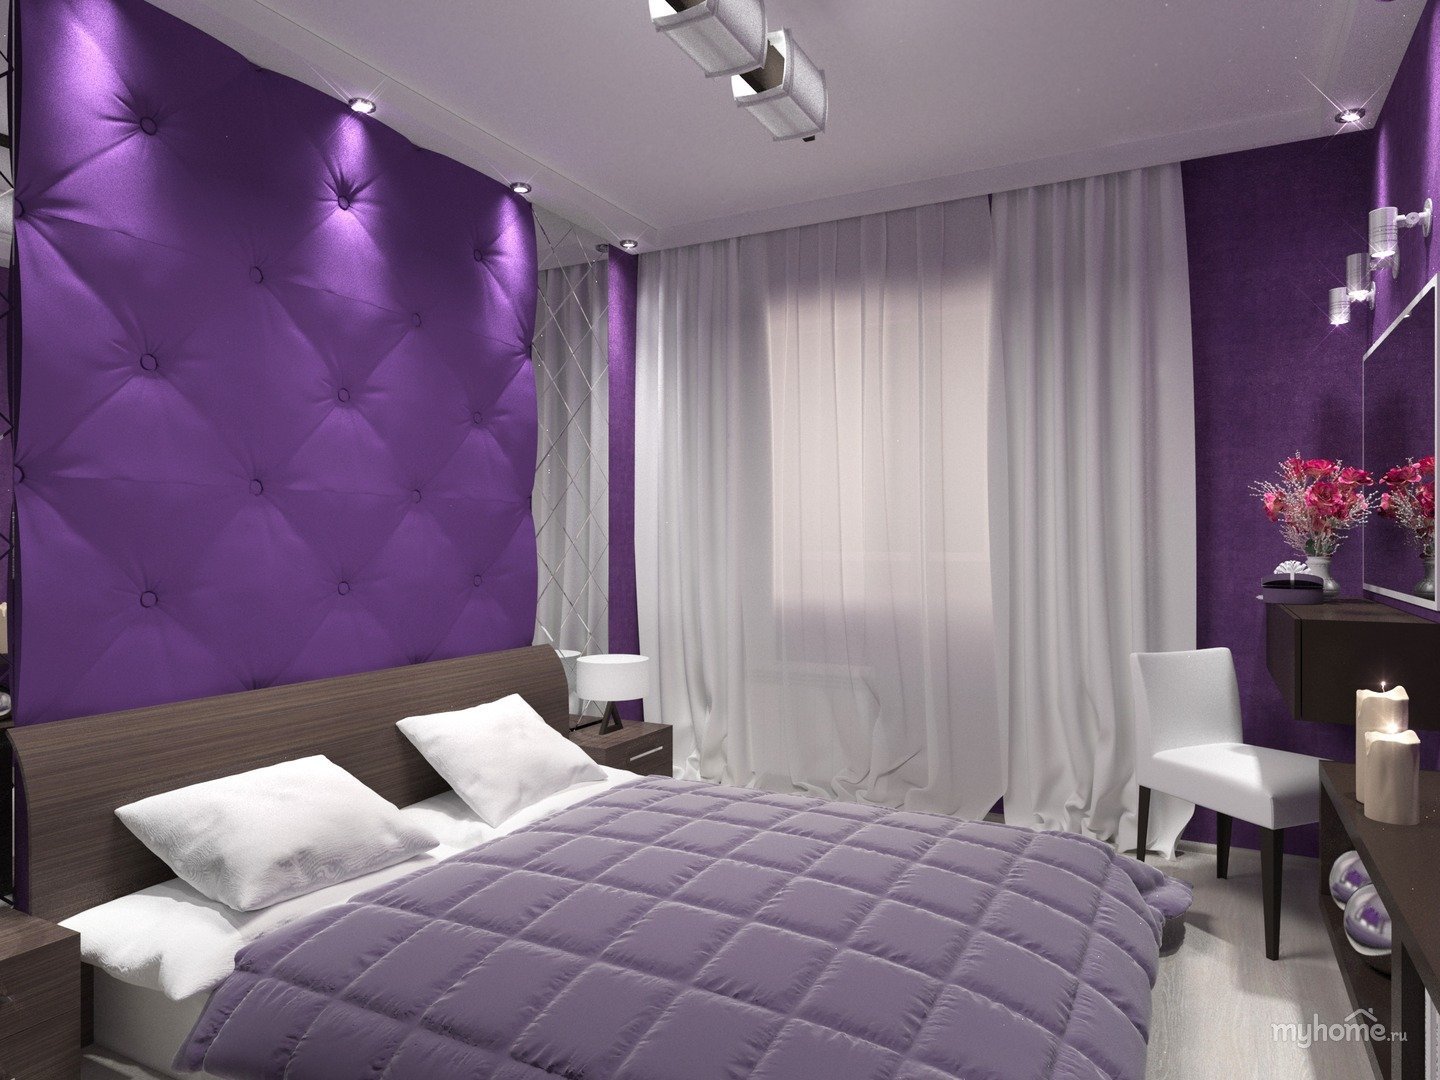 Выделение фиолетового цвета. Спальня в сиреневом цвете. Сиреневые стены в спальне. Фиолетовые шторы в спальню. Спальня в фиолетовых и сиреневых тонах.